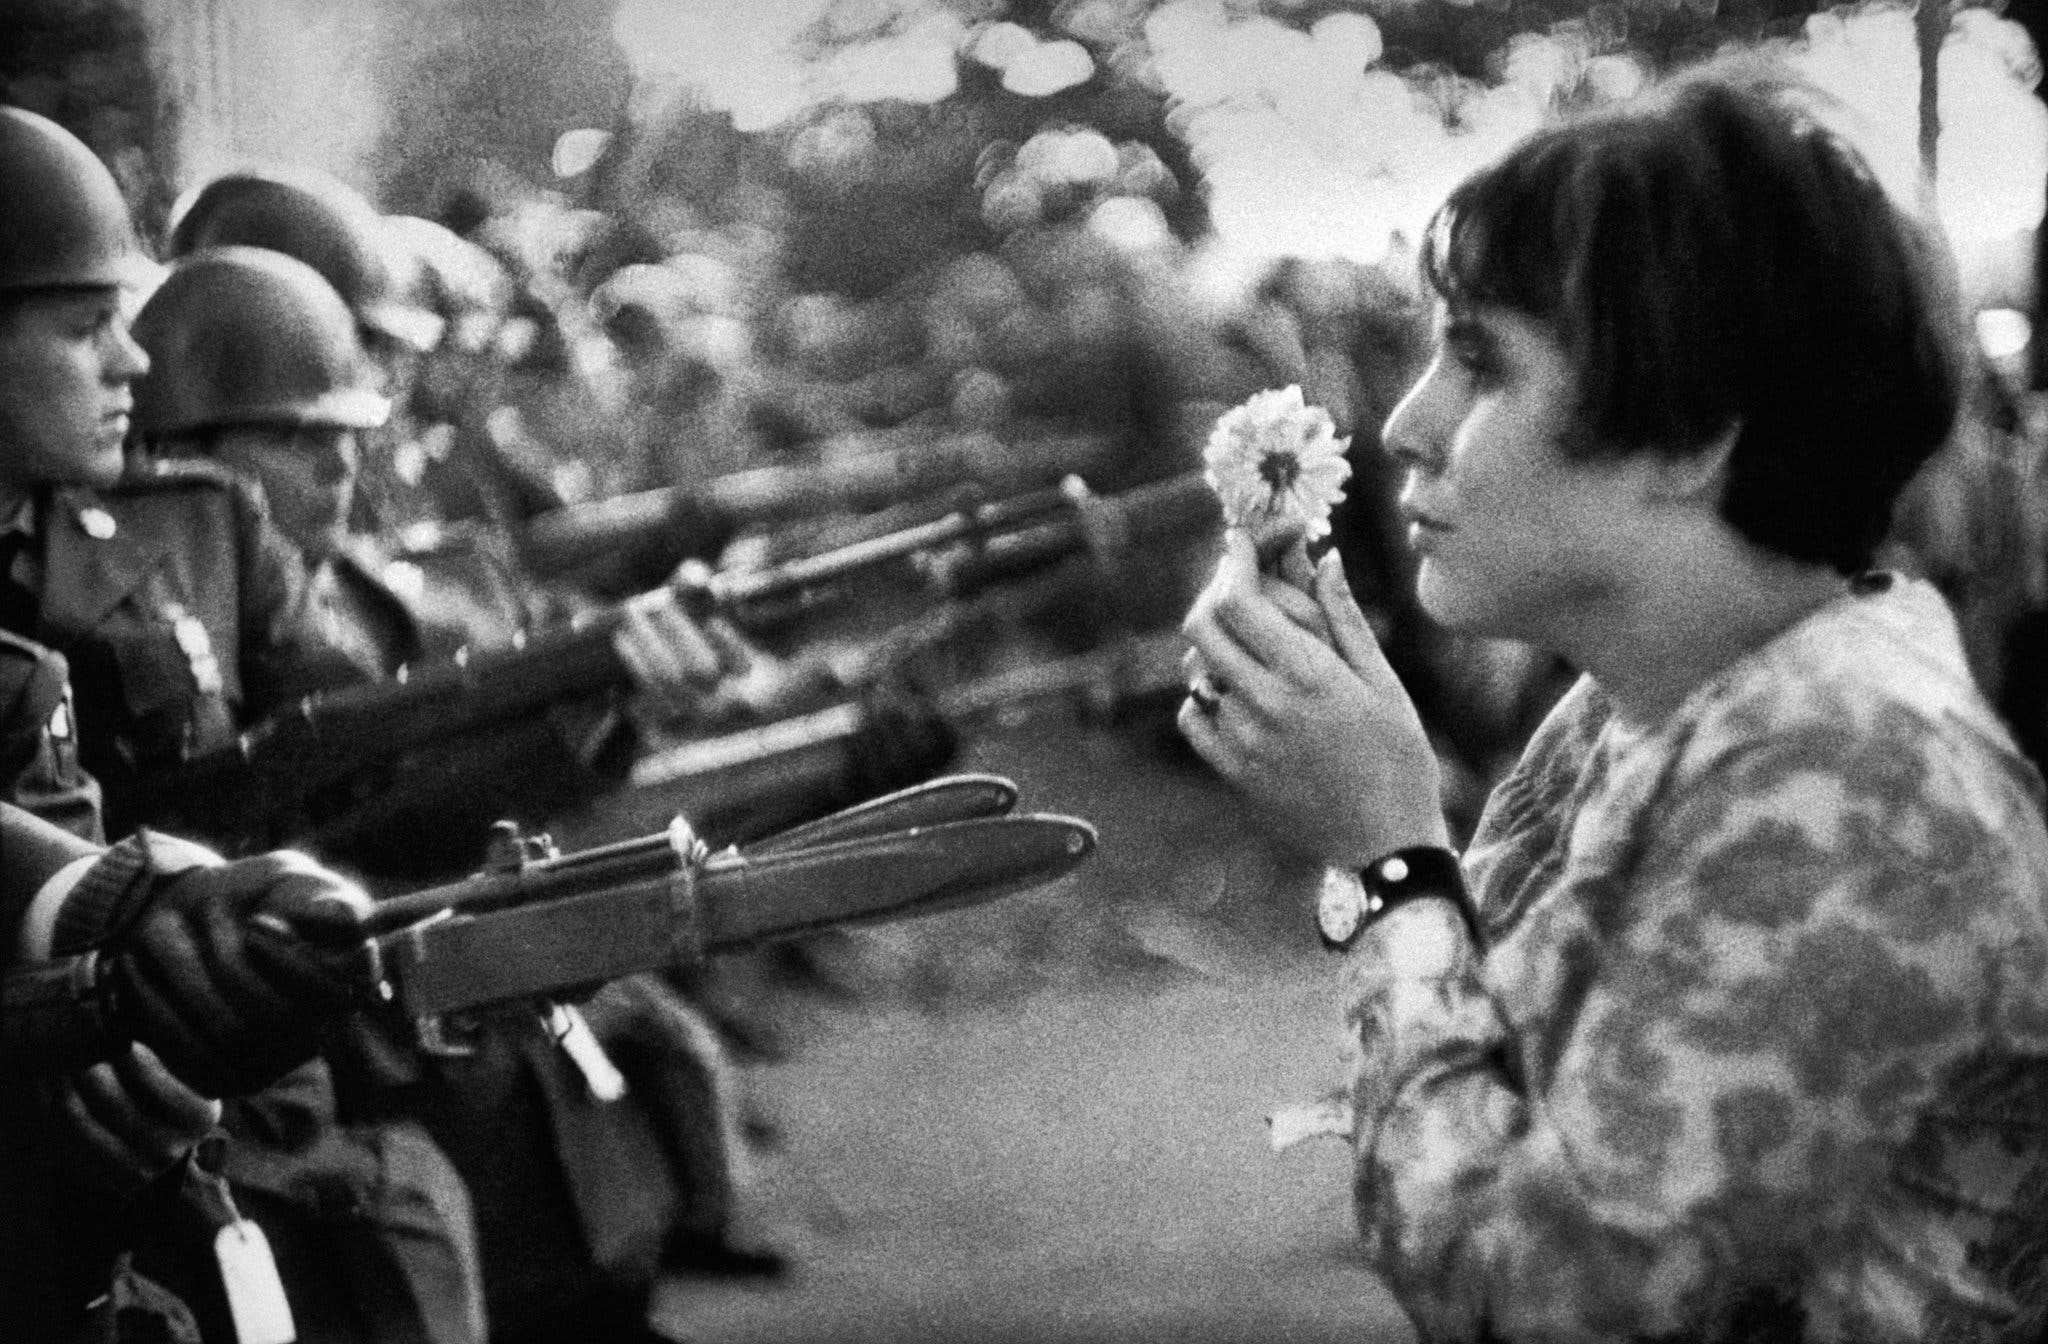 著名的「槍炮與鮮花」照片由攝影師Marc Riboud攝於1967年，17歲少女 Jan Rose Kasmir 在美國五角大樓外參與反越戰抗議行動。該照片成為60至70年代，美國反暴力的「Flower Power」運動的標誌性照片。© Marc Riboud / Magnum Photos